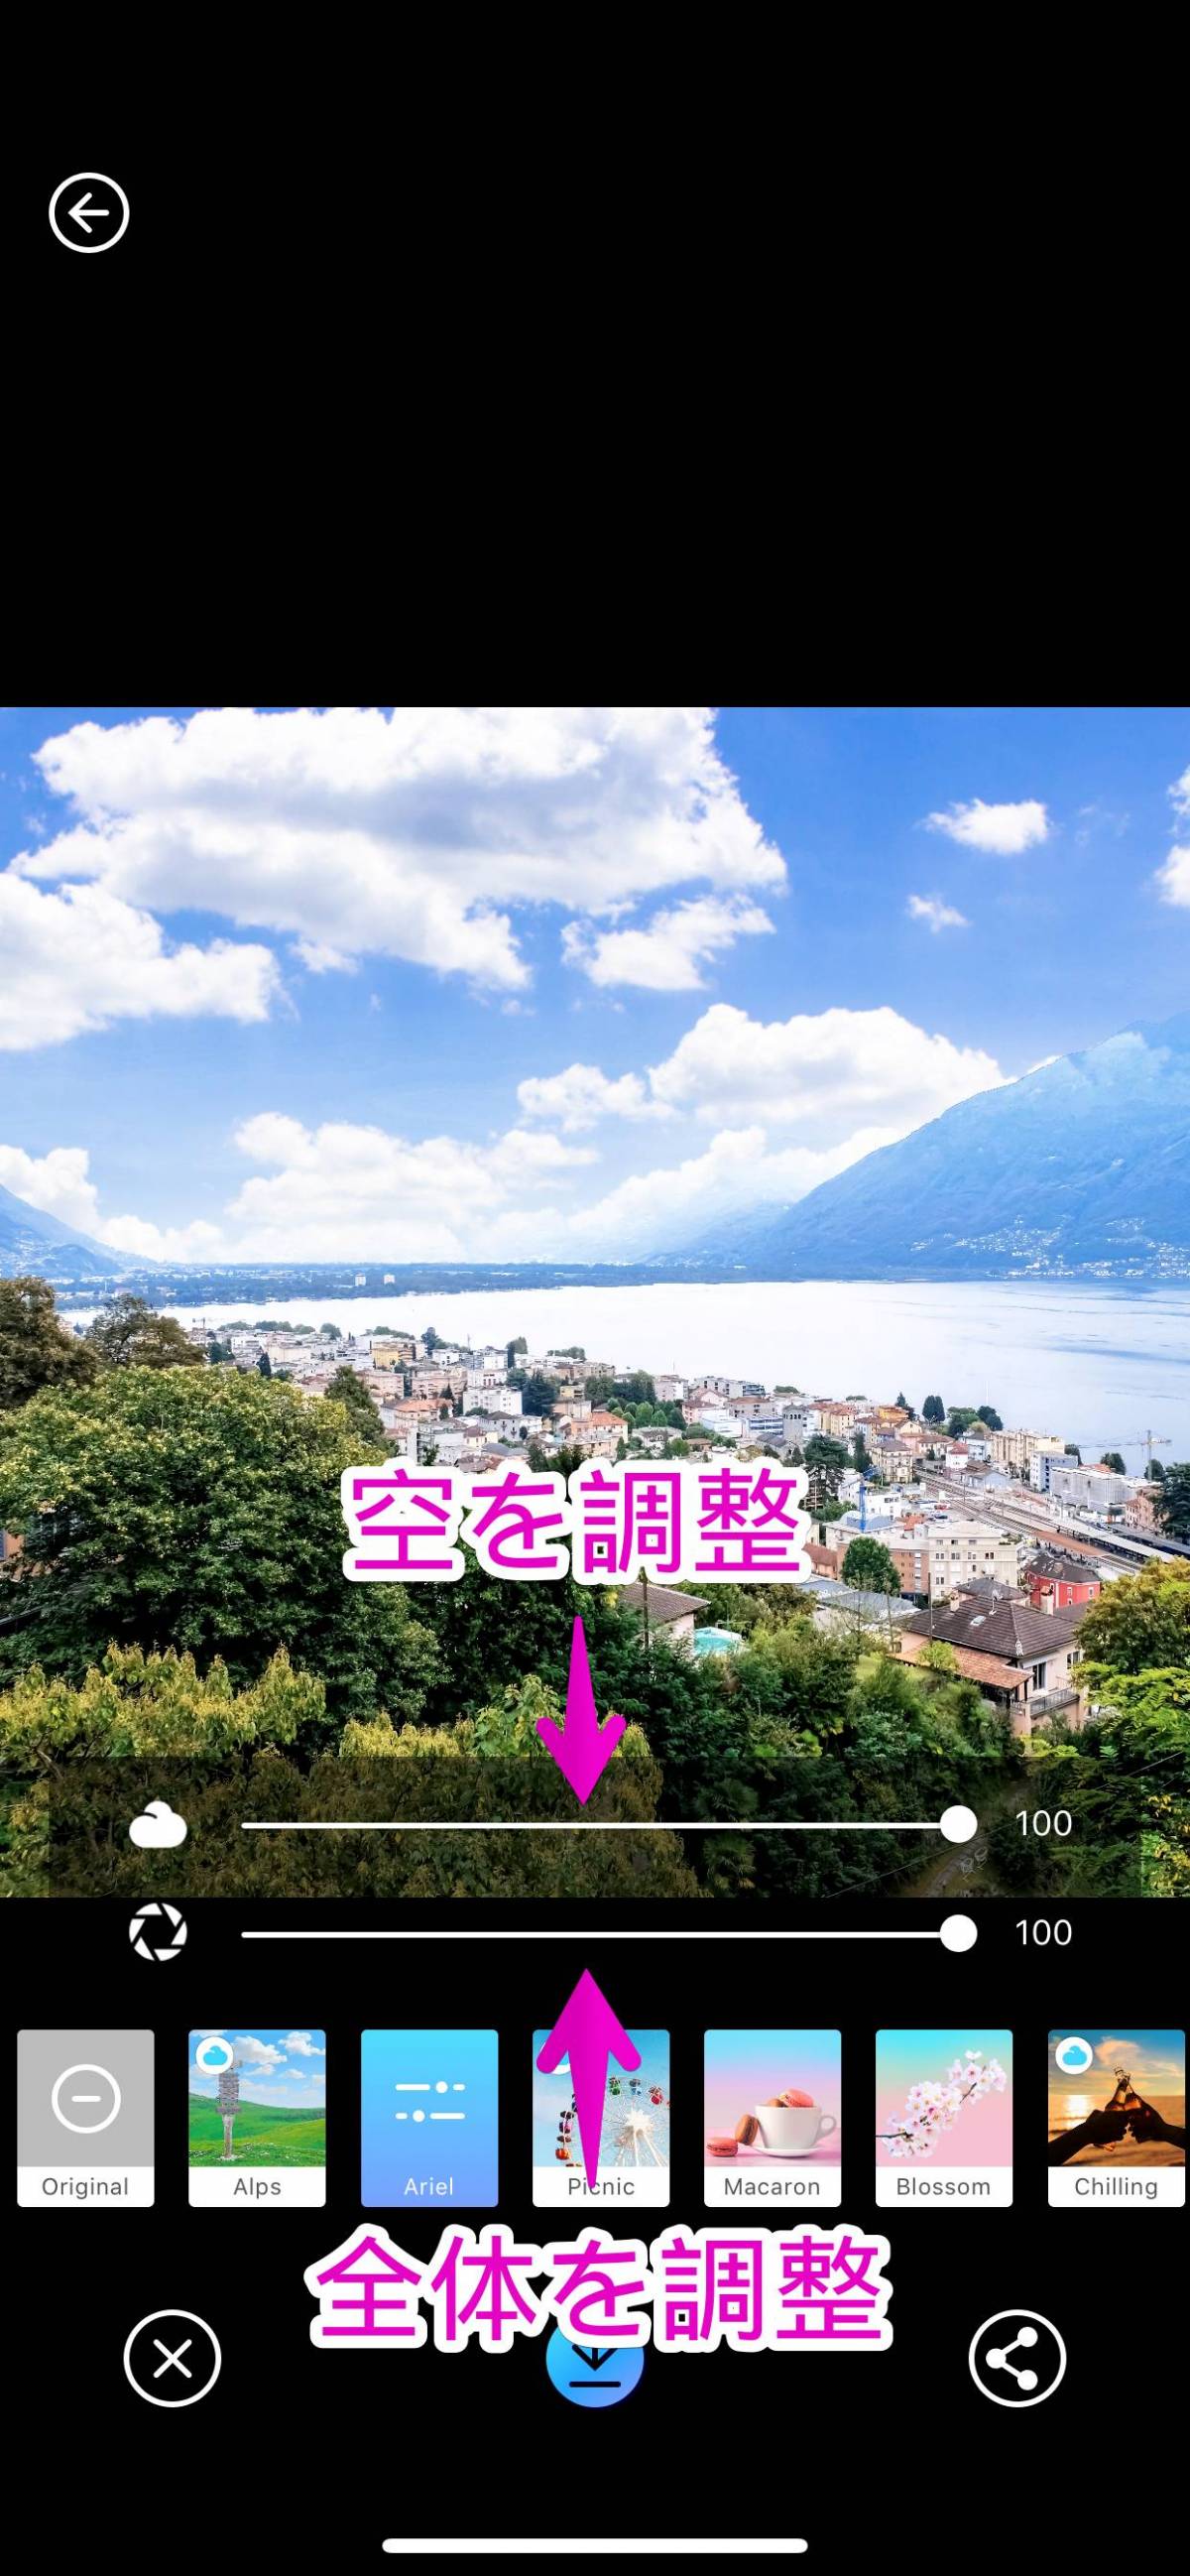 空加工アプリ Picnic がスゴ可愛い 曇りの写真を綺麗な青空へ変える Appliv Topics